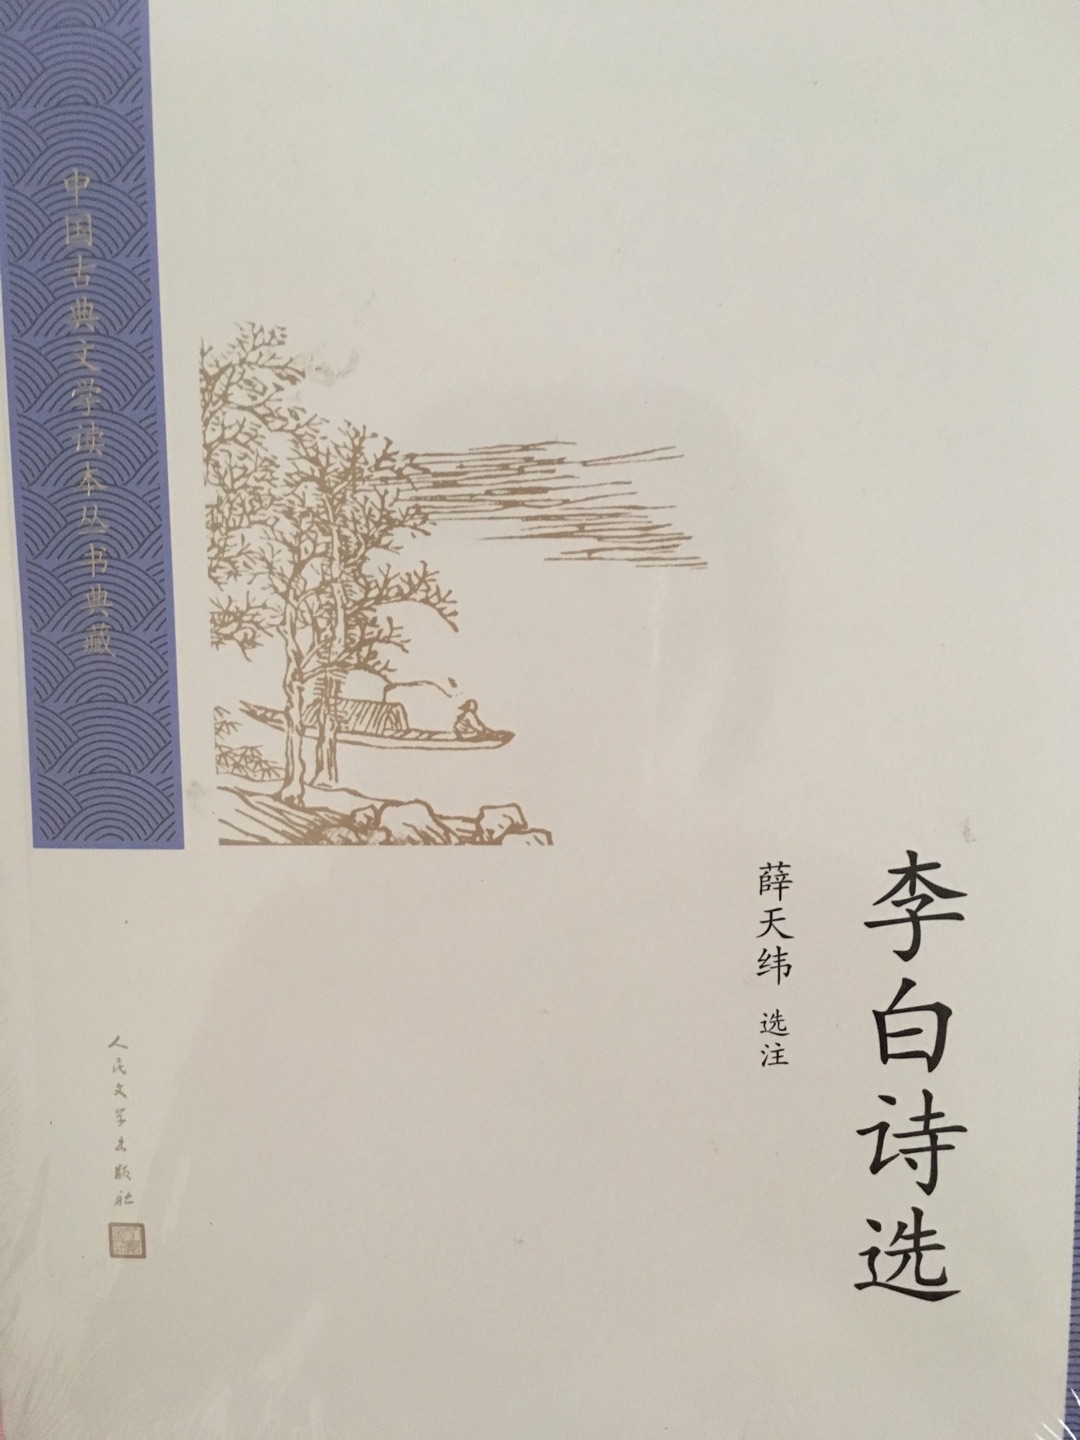 中国古典文学诵读典藏版，李白诗选，值得拥有及反复阅读！